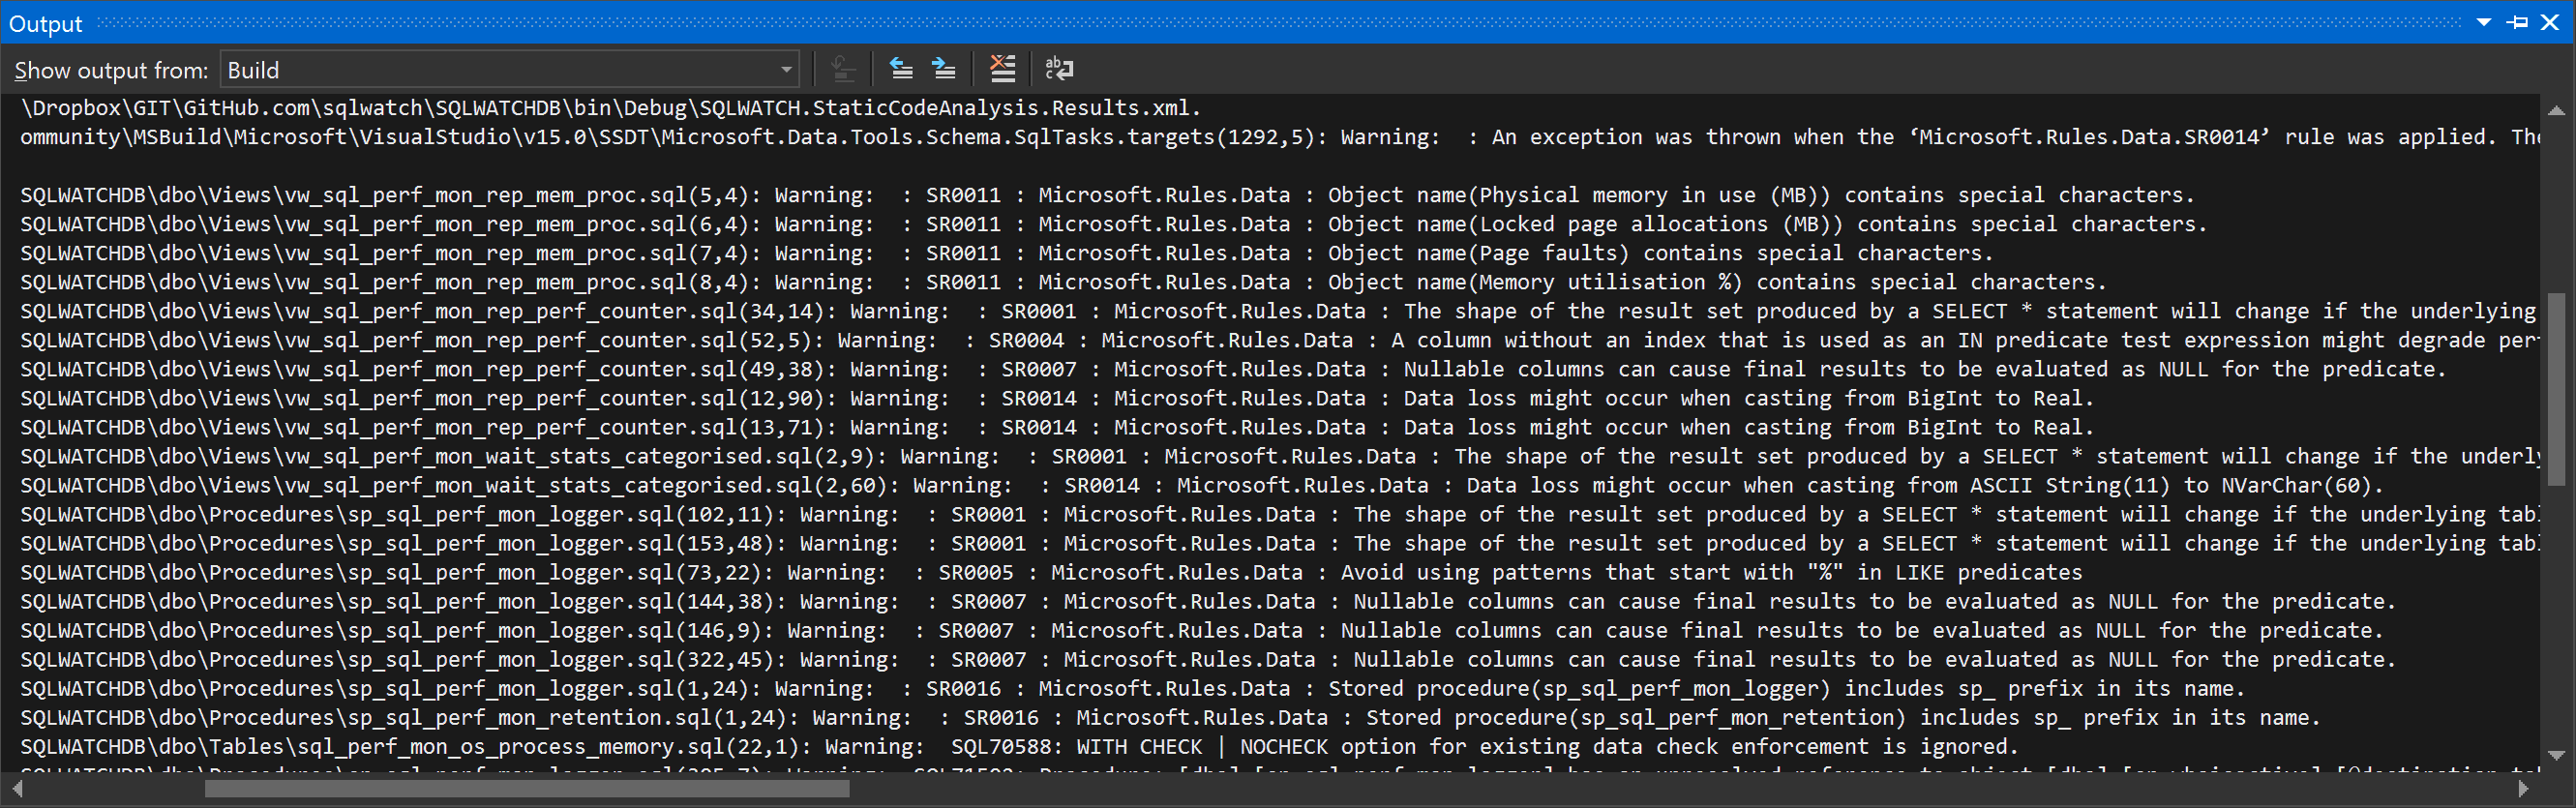 Visual Studio Database Code Analysis